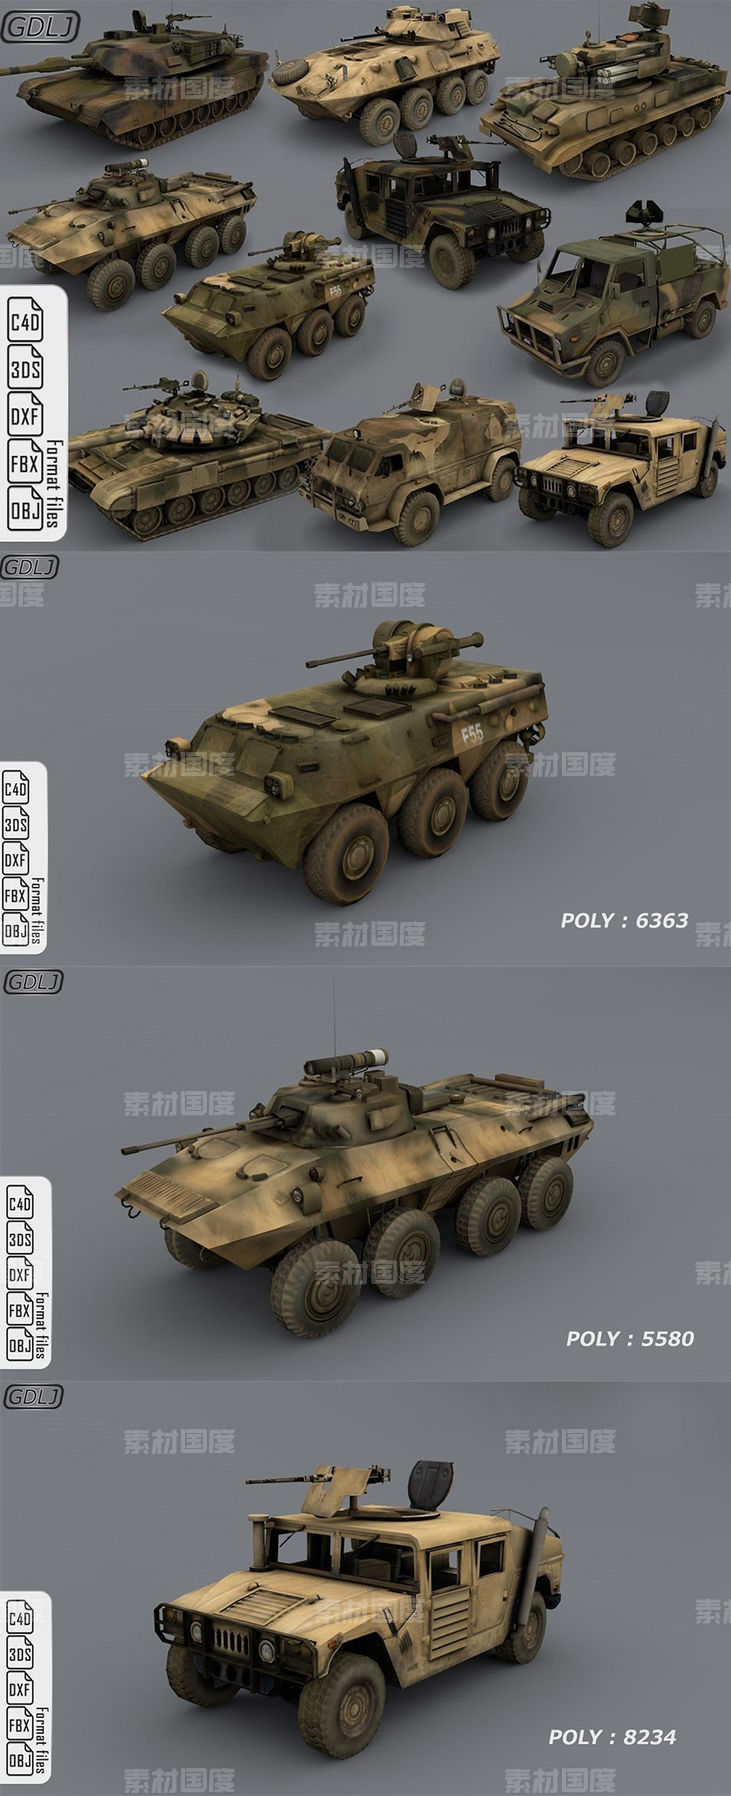 游戏军事模型游戏坦克模型3D模型c4d素材模型合集下载[C4D,OBJ,FBX,3DS]